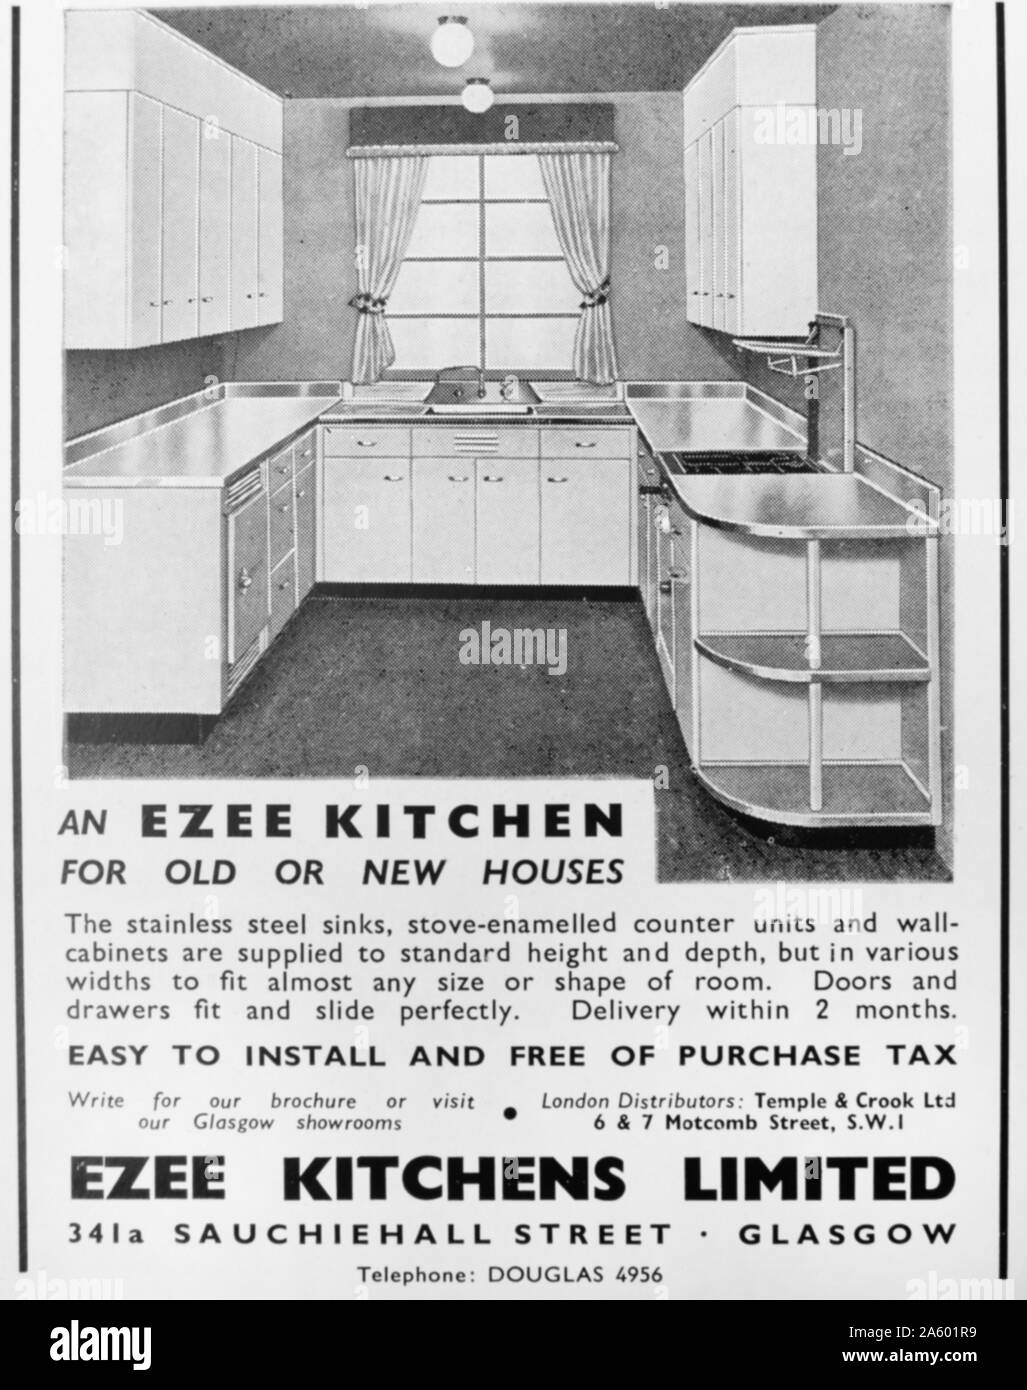 Advert for an 'Ezee Kitchen' from Ezee Kitchens Ltd. Glasgow Stock Photo